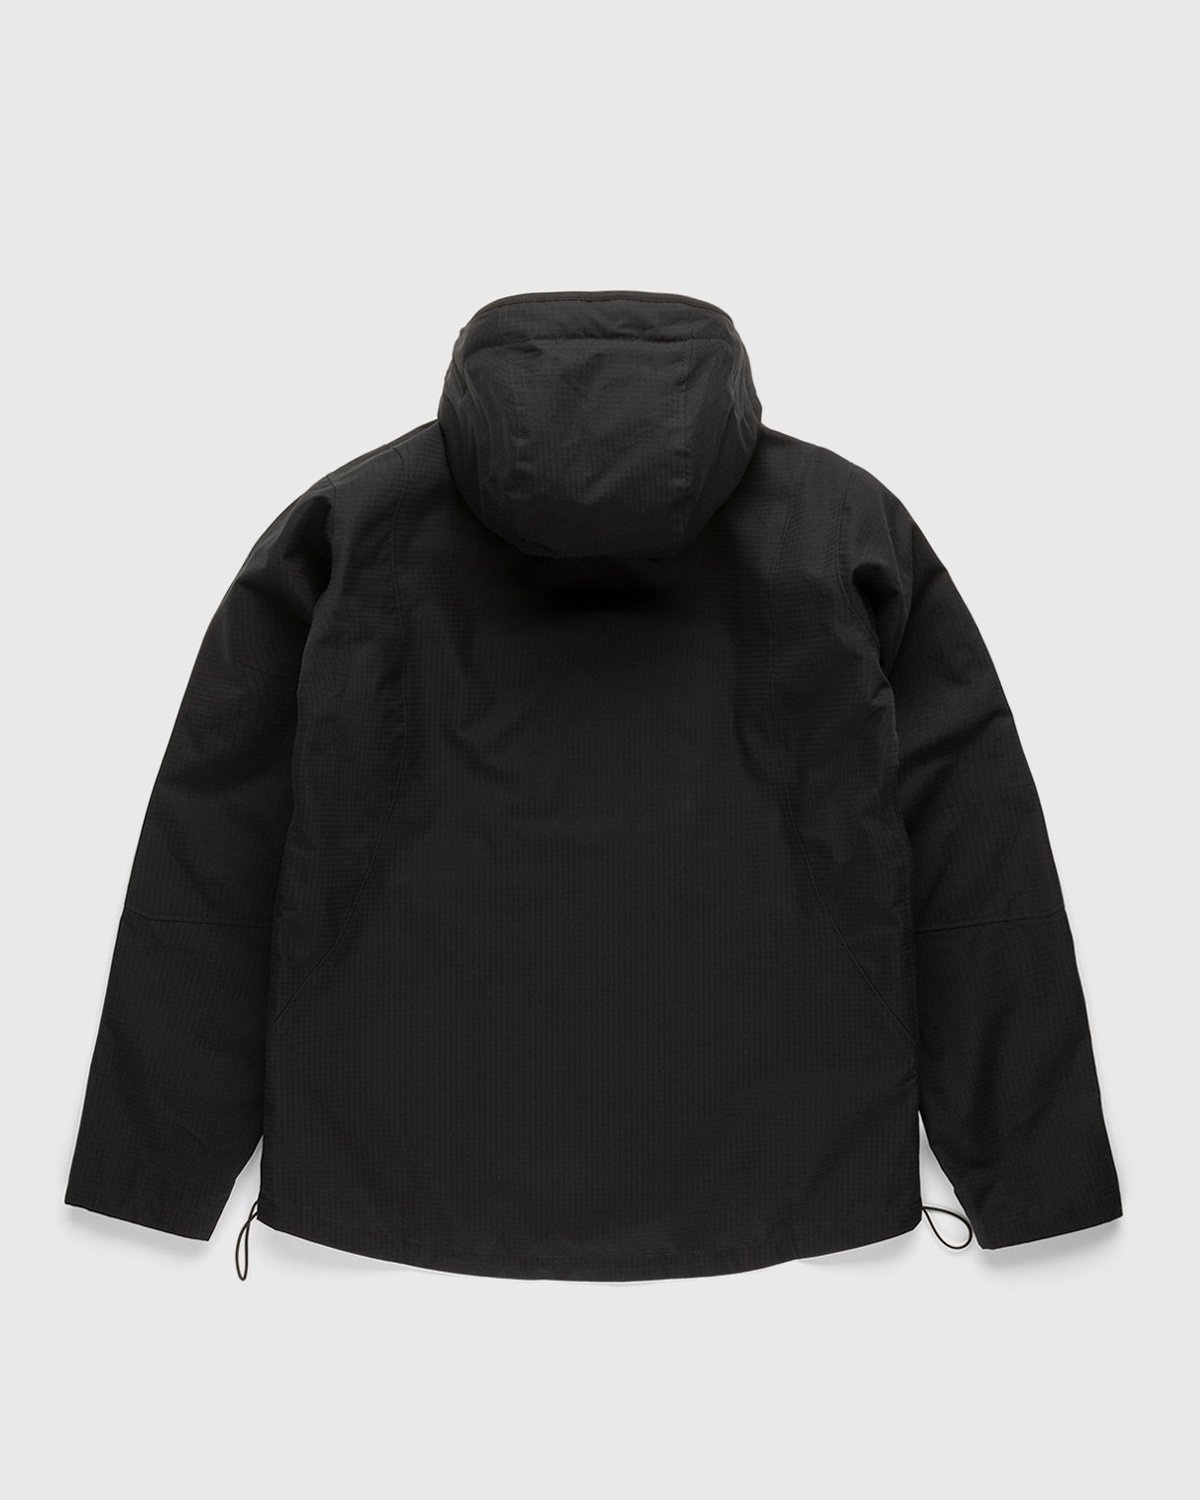 Arnar Mar Jonsson – Ventile Cross Pocket Outerwear Jacket Lava Beige - Windbreakers - Brown - Image 2